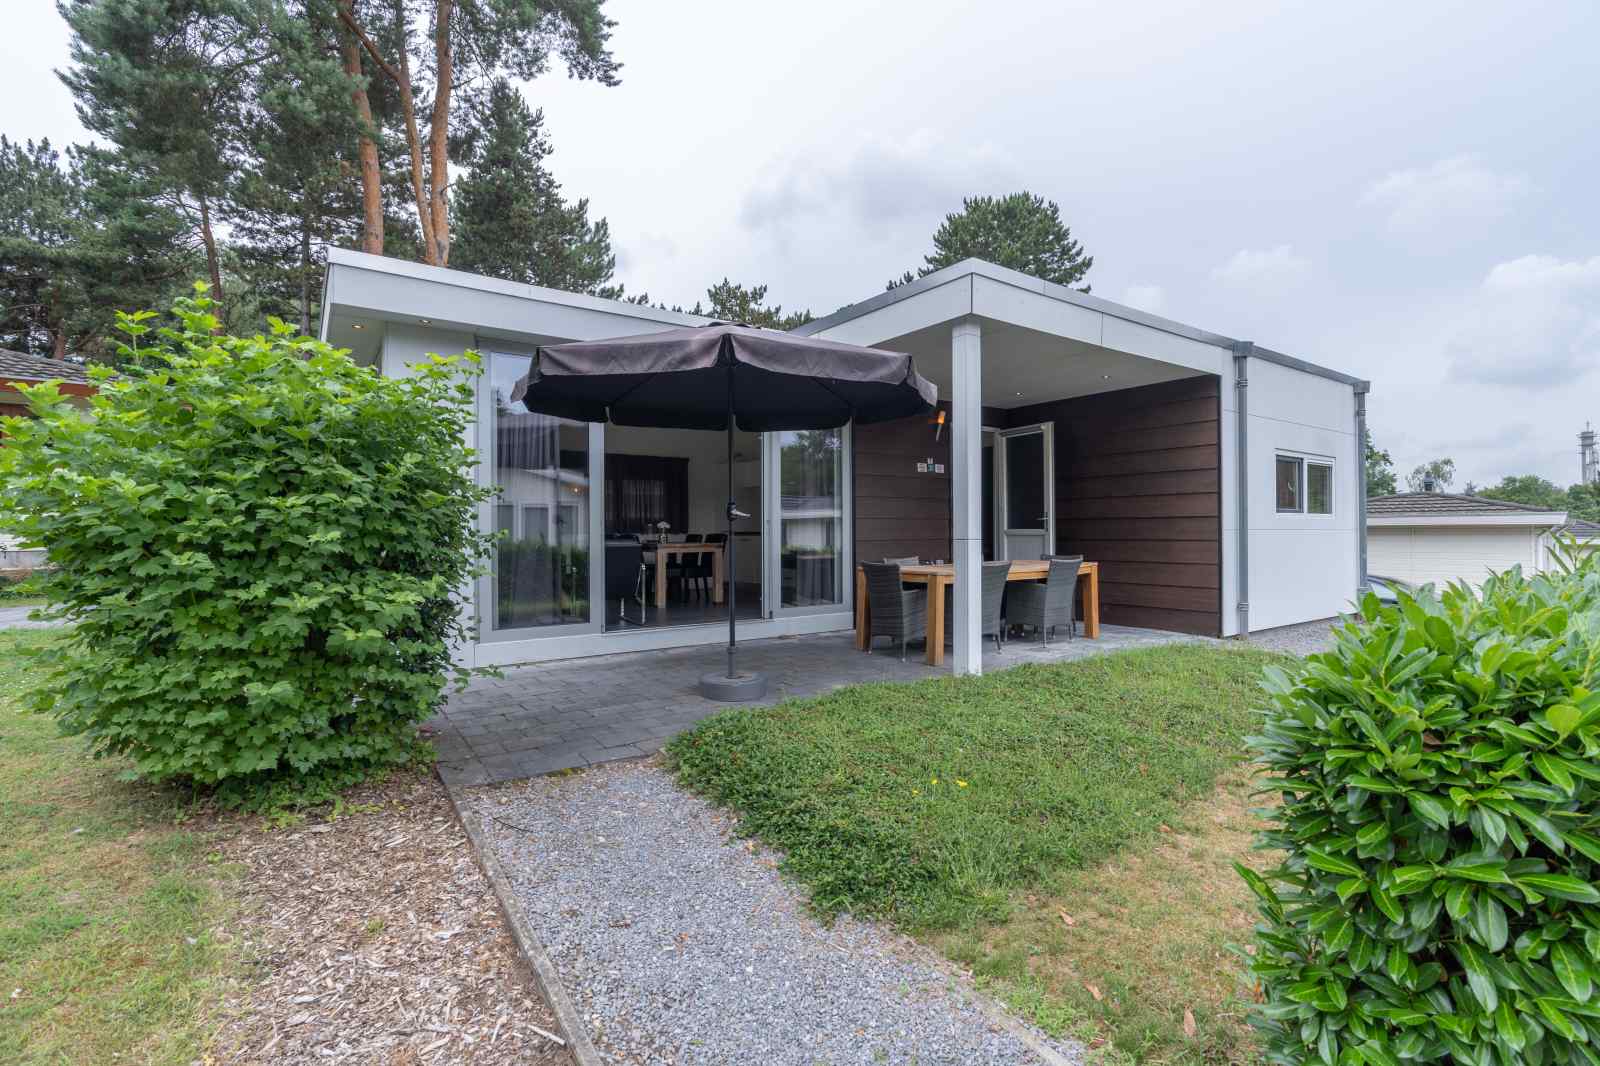 Heerlijkehuisjes.nl Luxe 4 persoons vakantiehuis gelegen op prachtig vakantiepark in Zuid-Limburg - Nederland - Europa - Brunssum